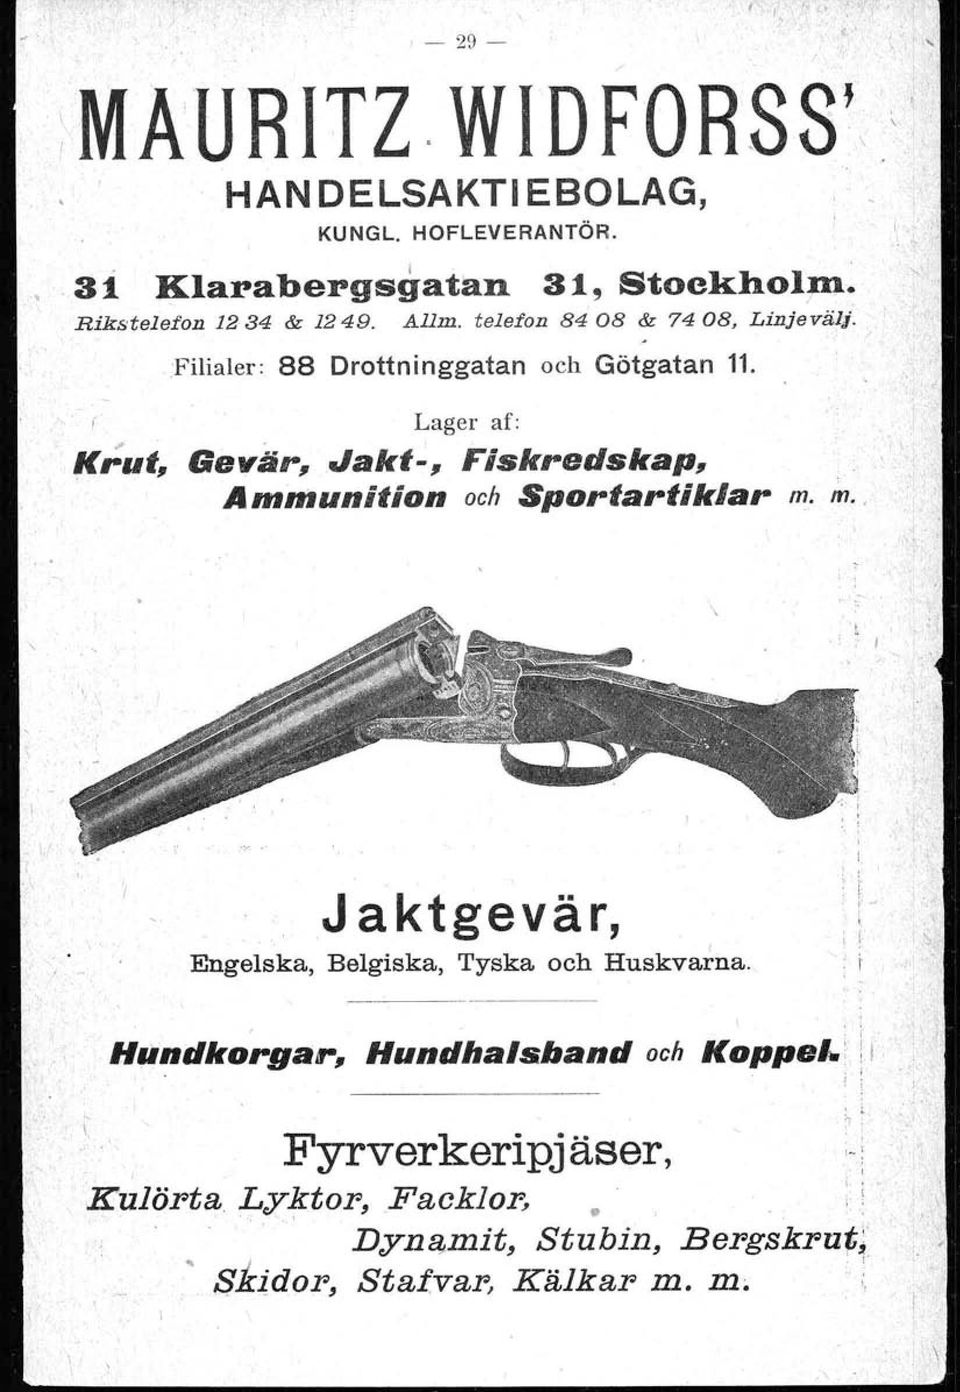 F'ilialer: 88 Drottninggatan och Götgatan 11. Lager af: Krut, ". Gevär, Jakt-, Fiskredskap, Ammunition och Sportartiklar m.